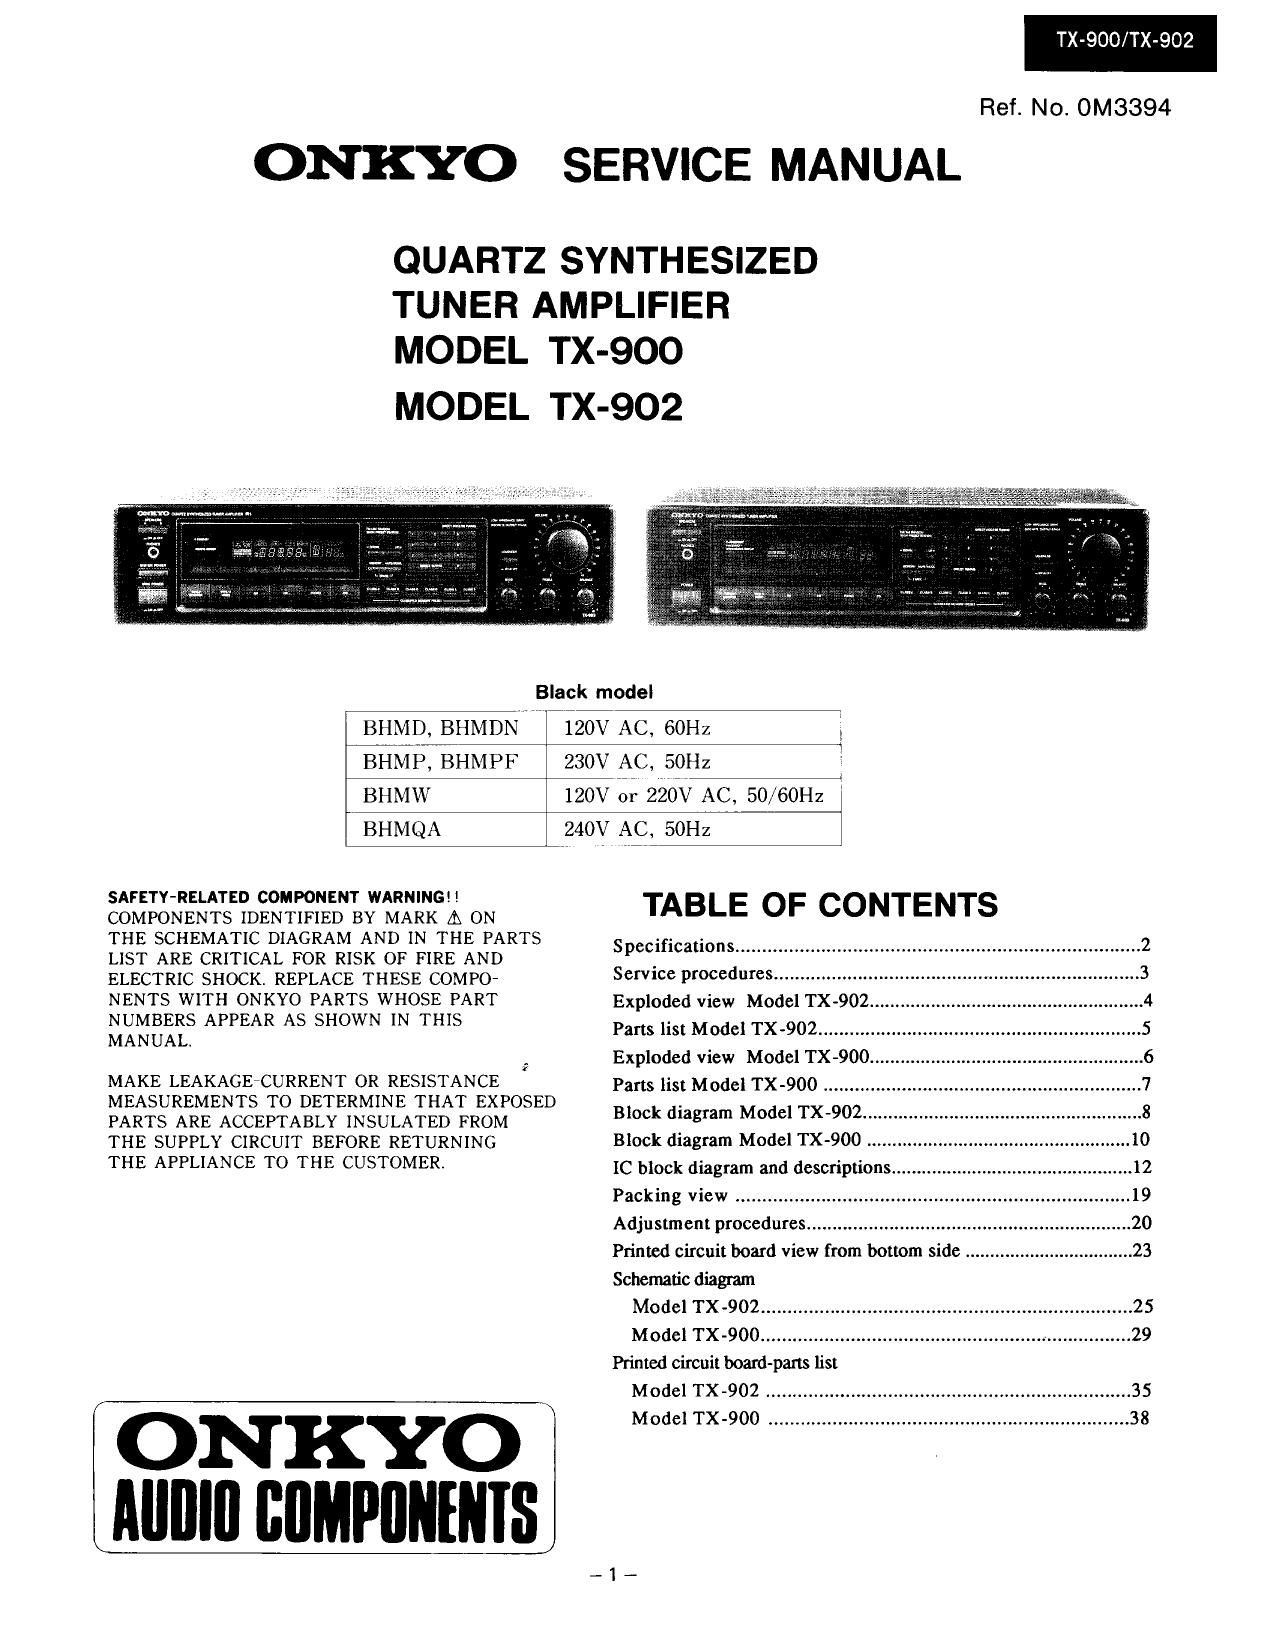 Onkyo TX 902 Service Manual